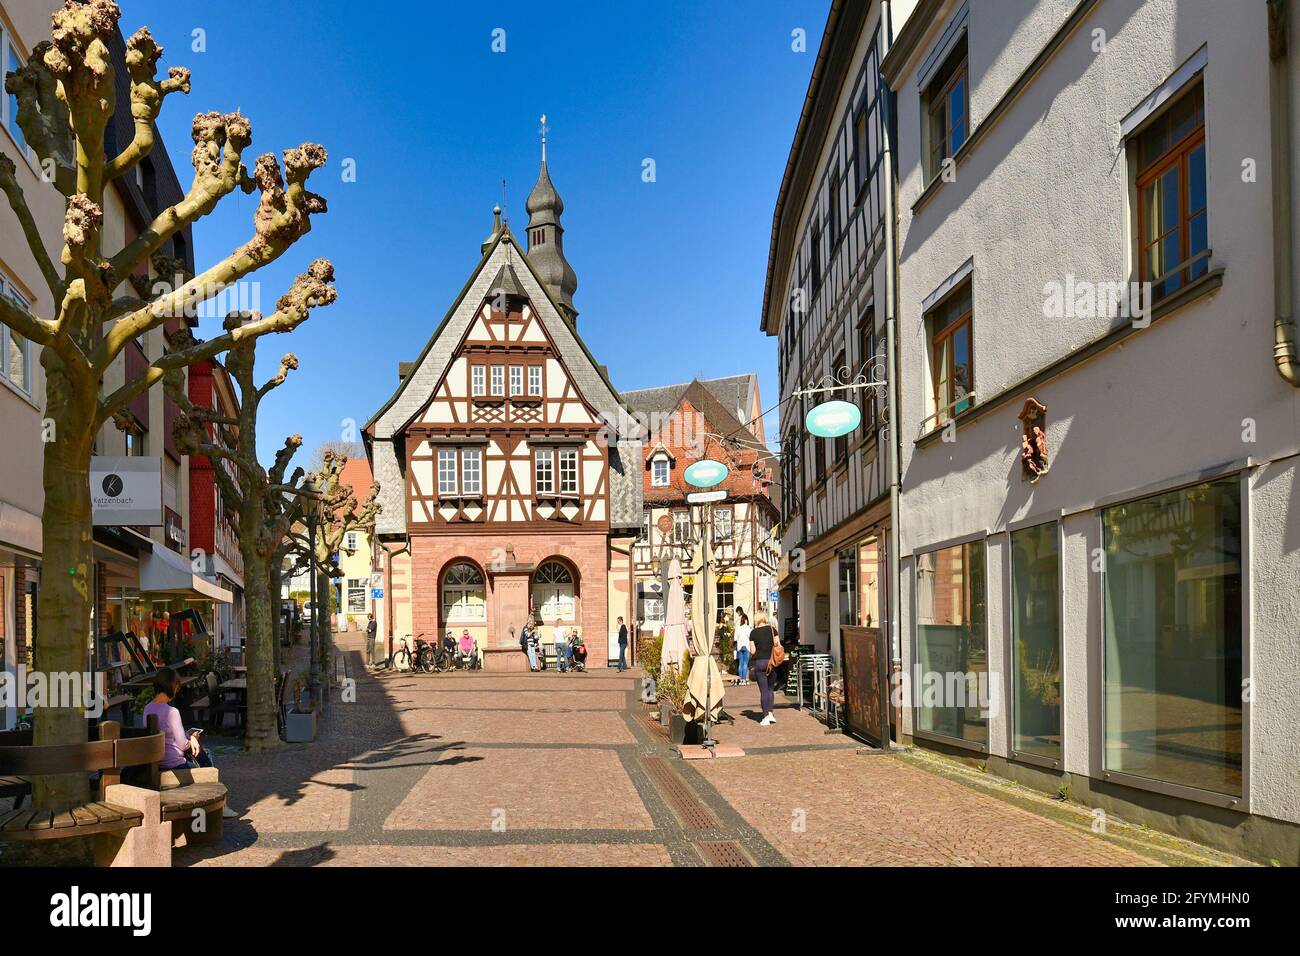 Hofheim, Germania - Marzo 2021: Strada con tradizionali edifici a graticcio nel centro storico della città vecchia di Hofheim piena di persone in giornata di sole Foto Stock